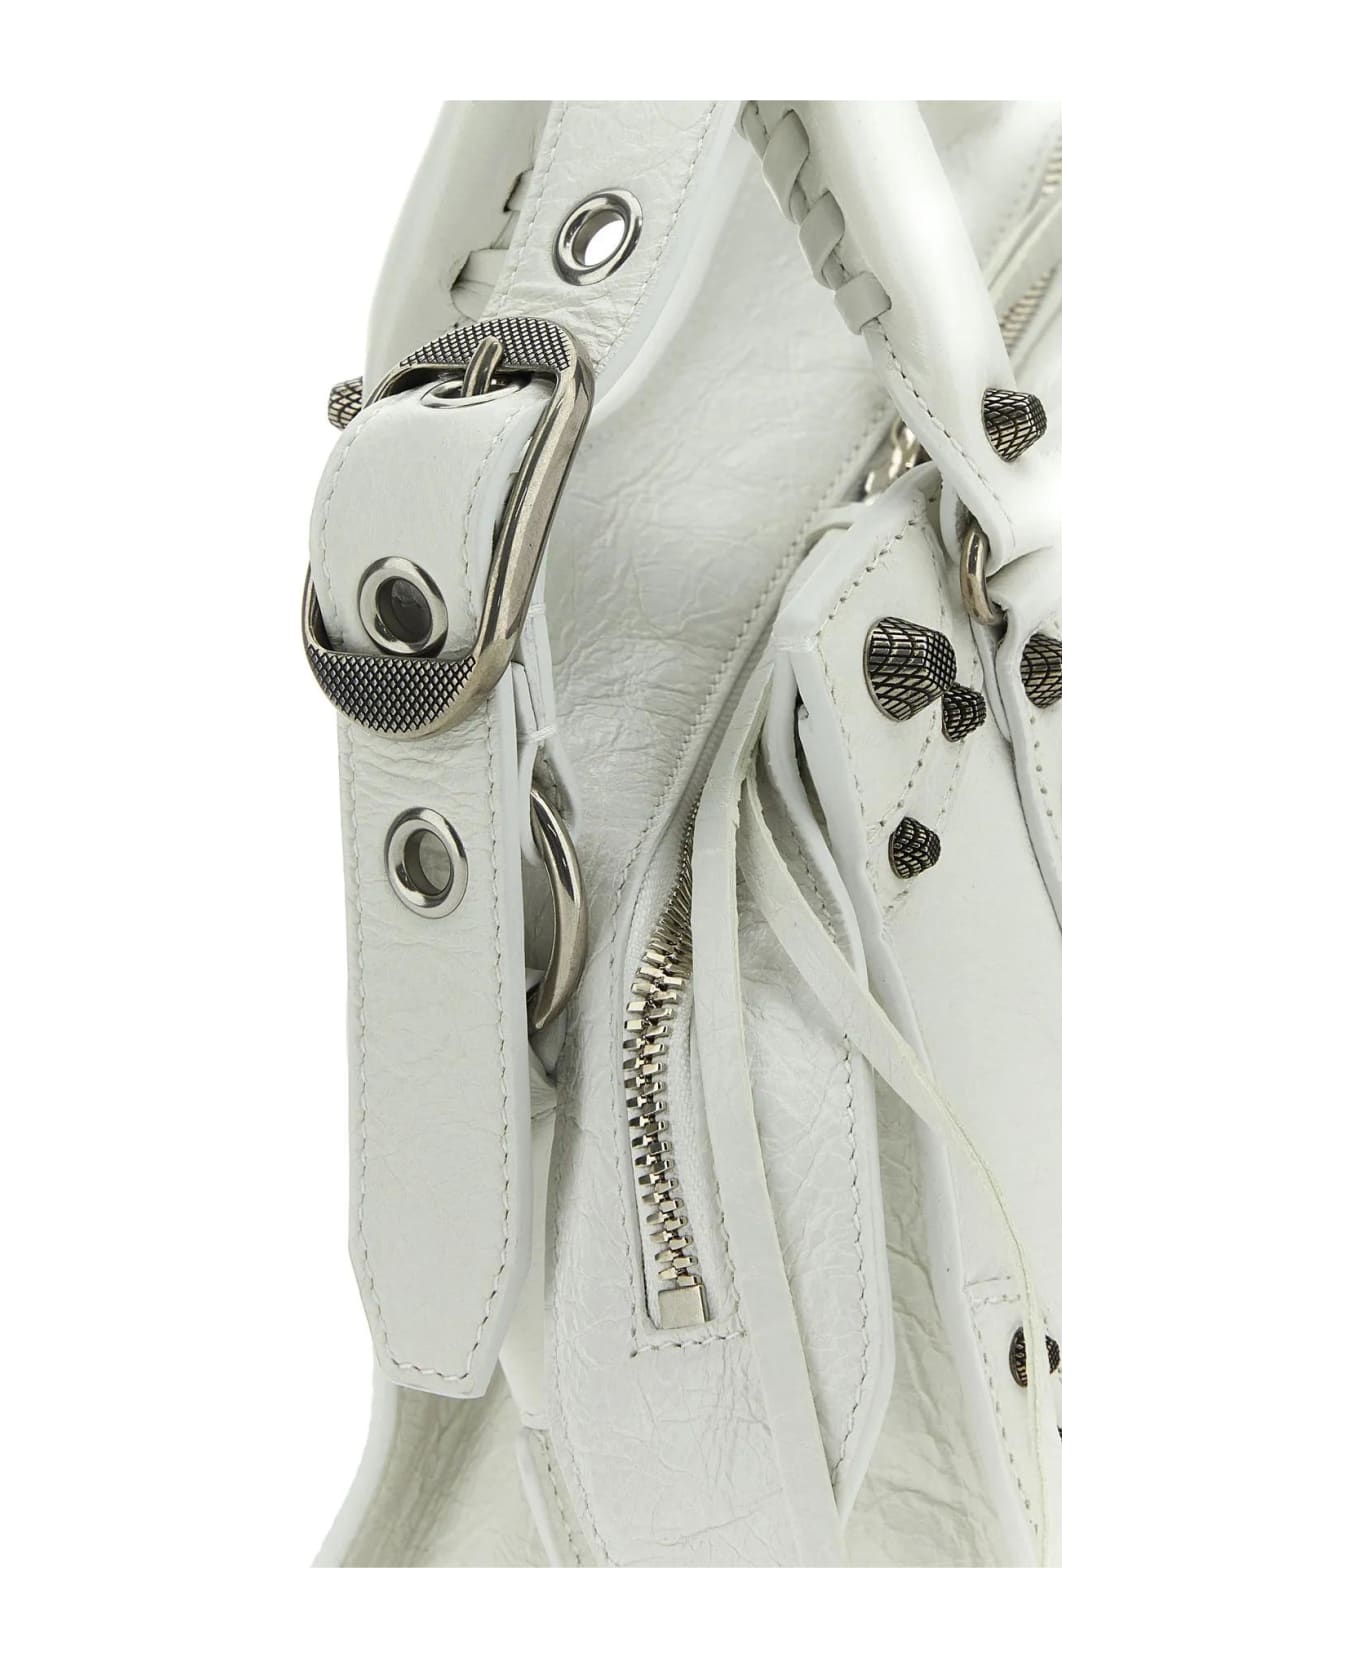 Balenciaga Neo Cagole Shoulder Bag - Optic White トートバッグ